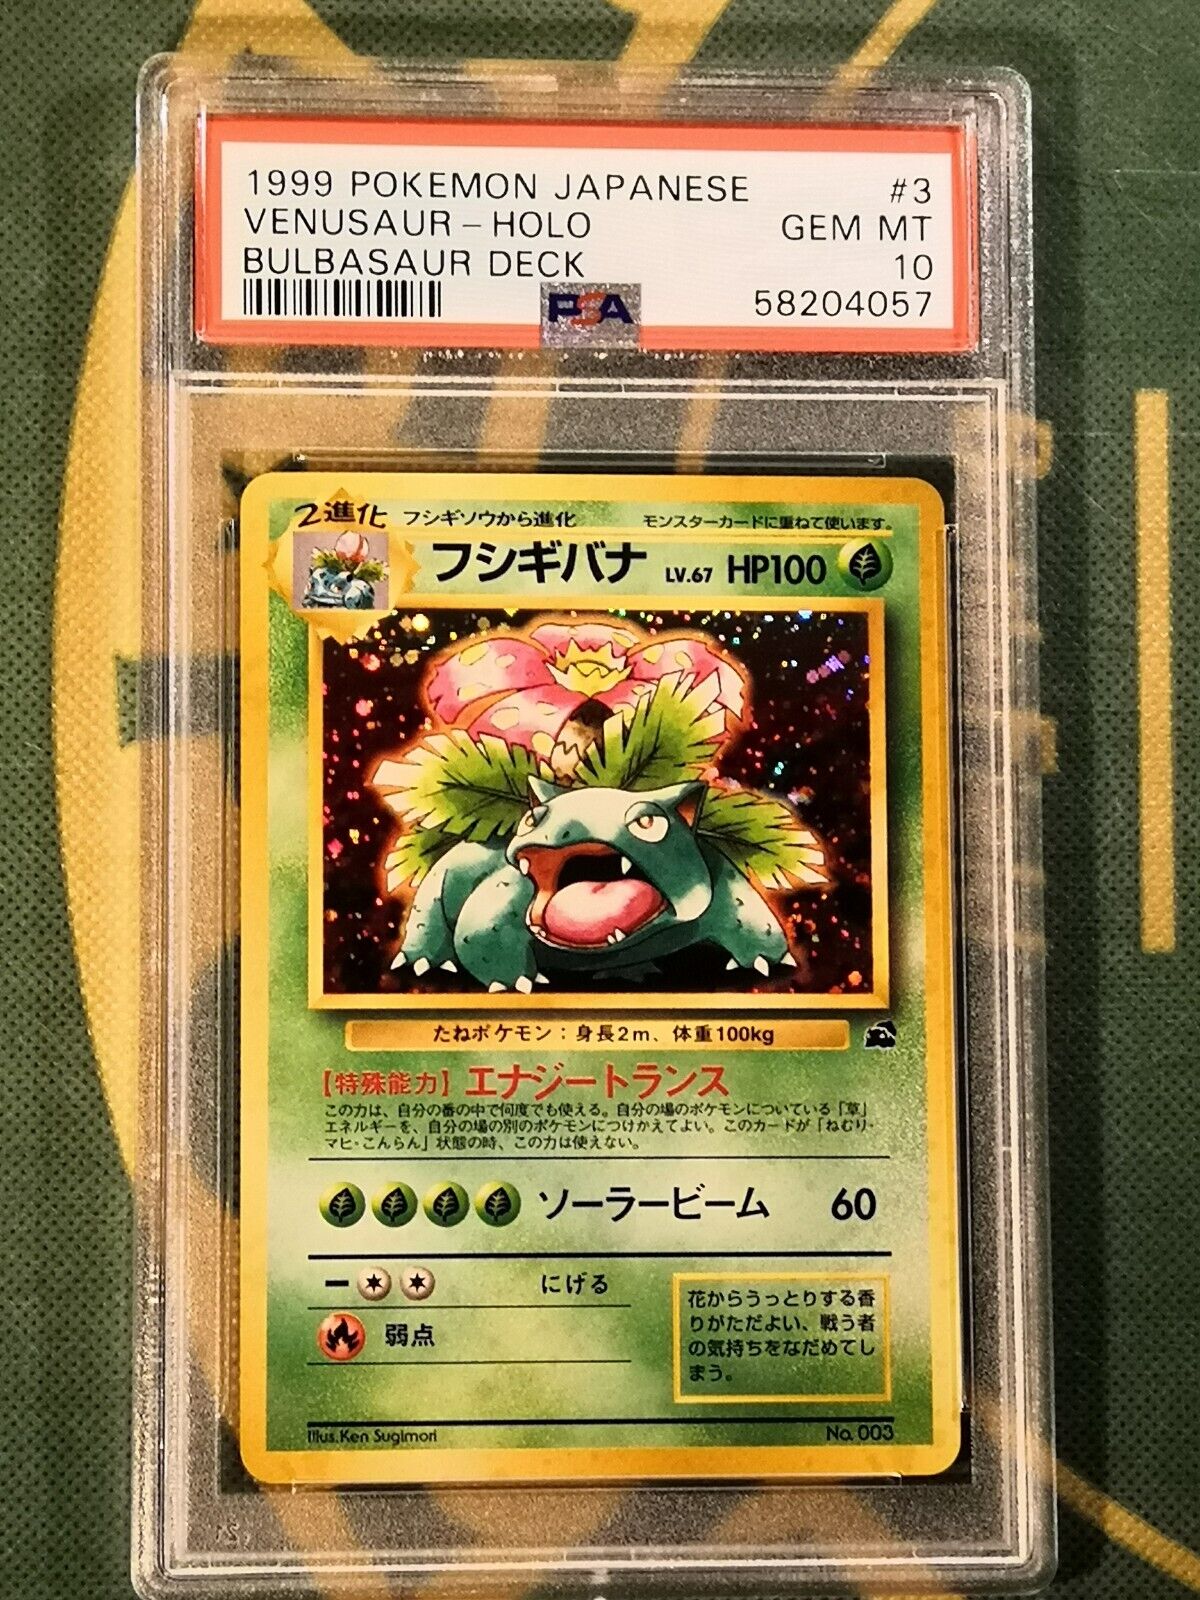 PSA 10 Venusaur holo Bulbasaur deck promo Japanese Pokemon Card cd